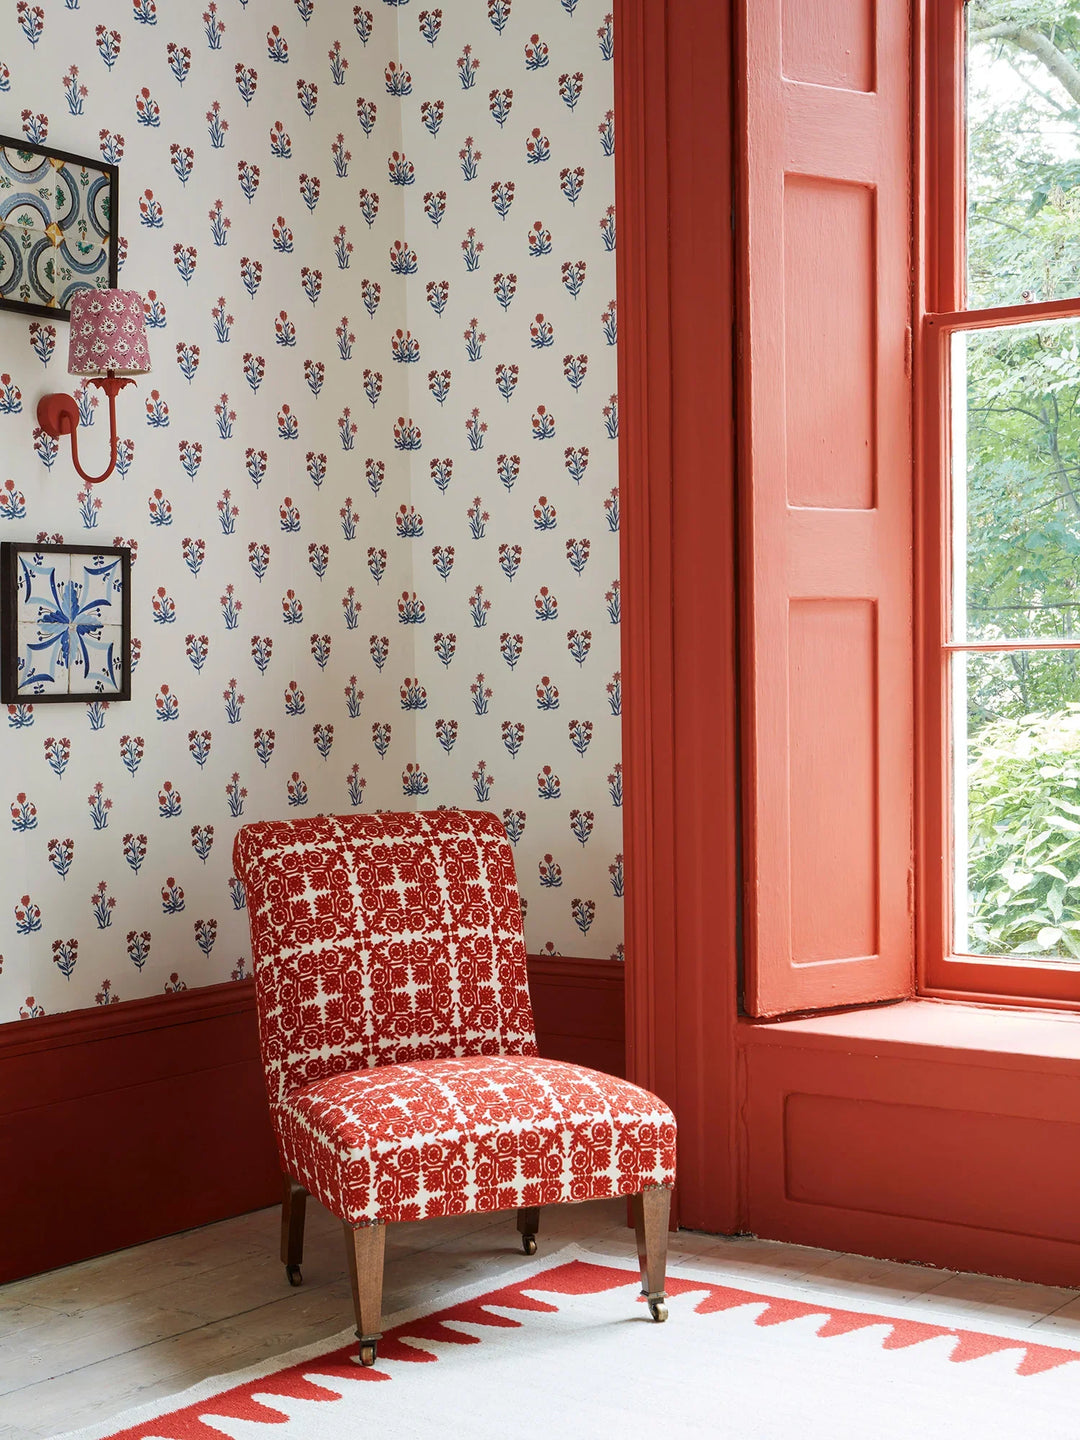 jaipur-flower-wallpaper-block-printed-indian-textile-design-dado-atelier-ruby